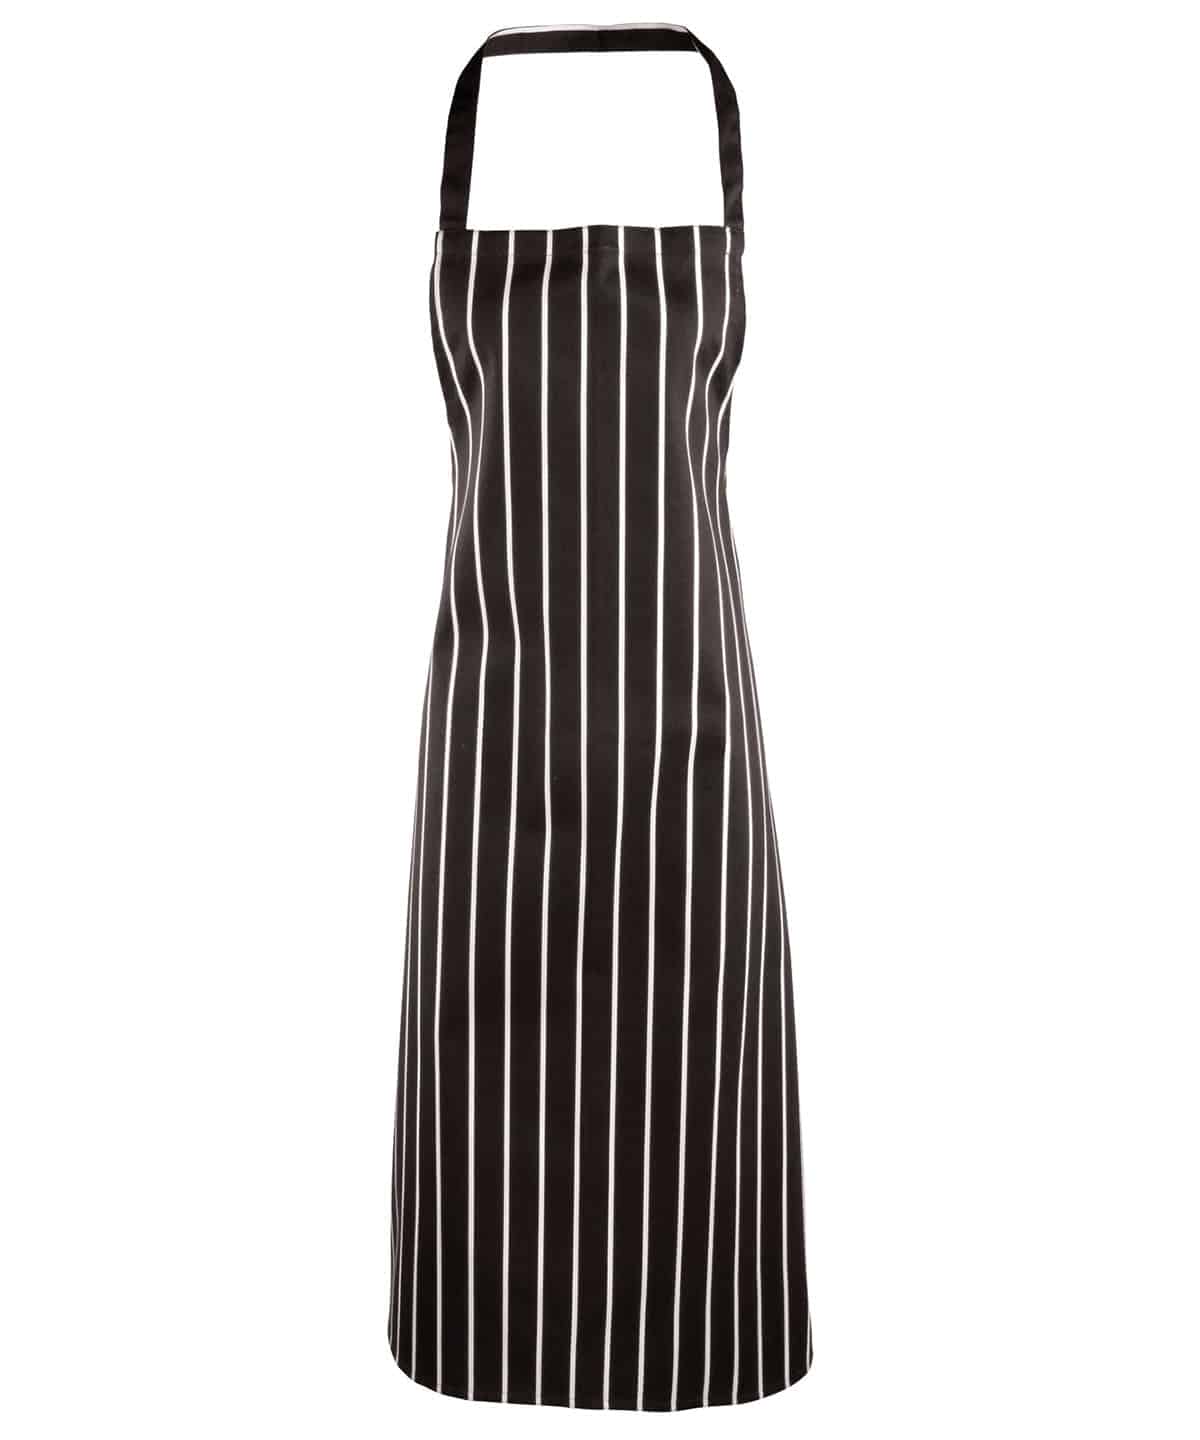 Black/White - Striped bib apron